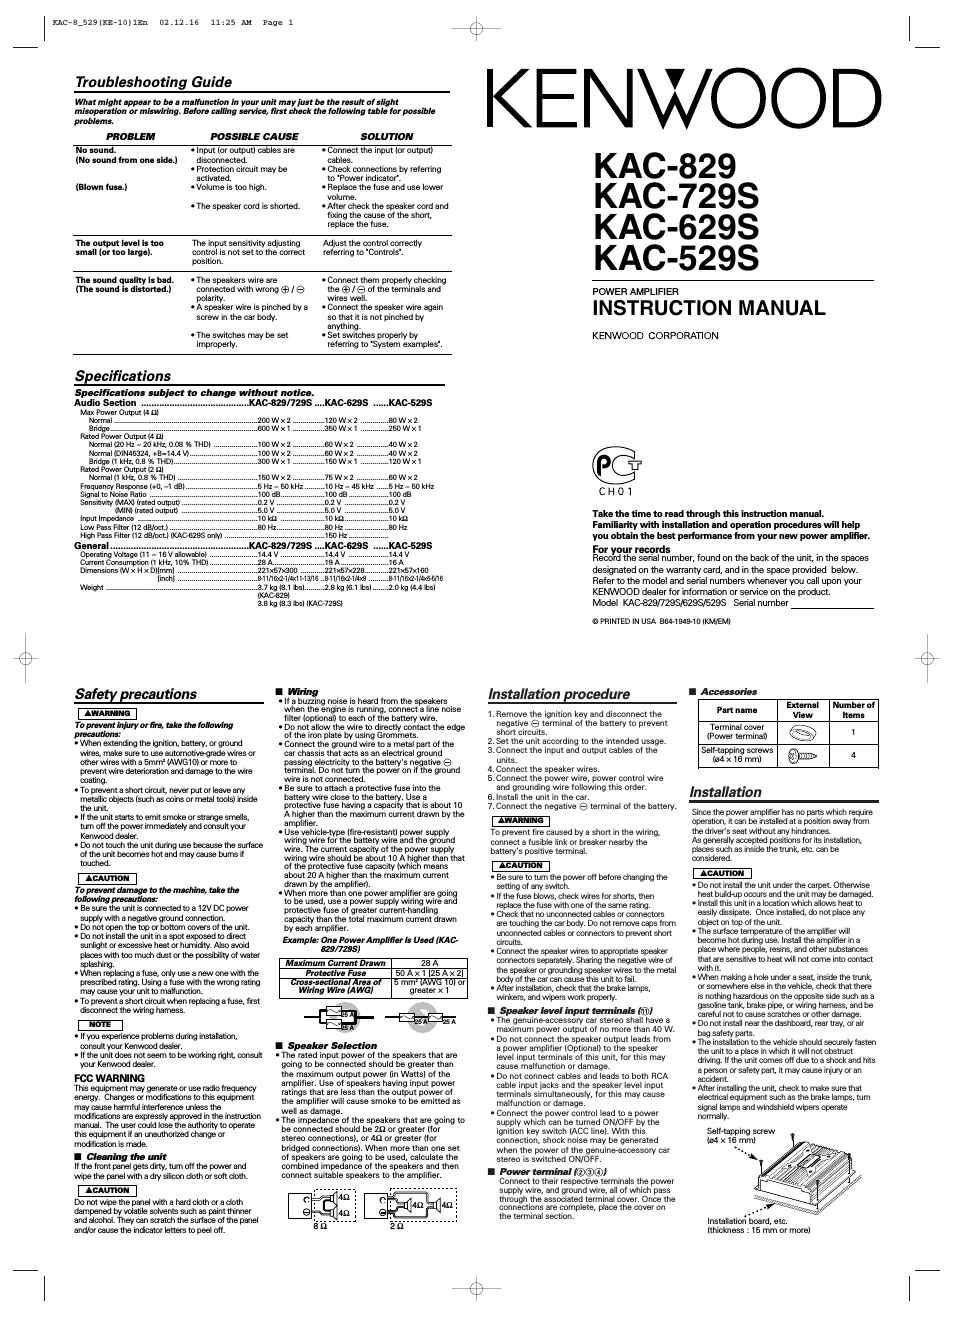 KAC-629S